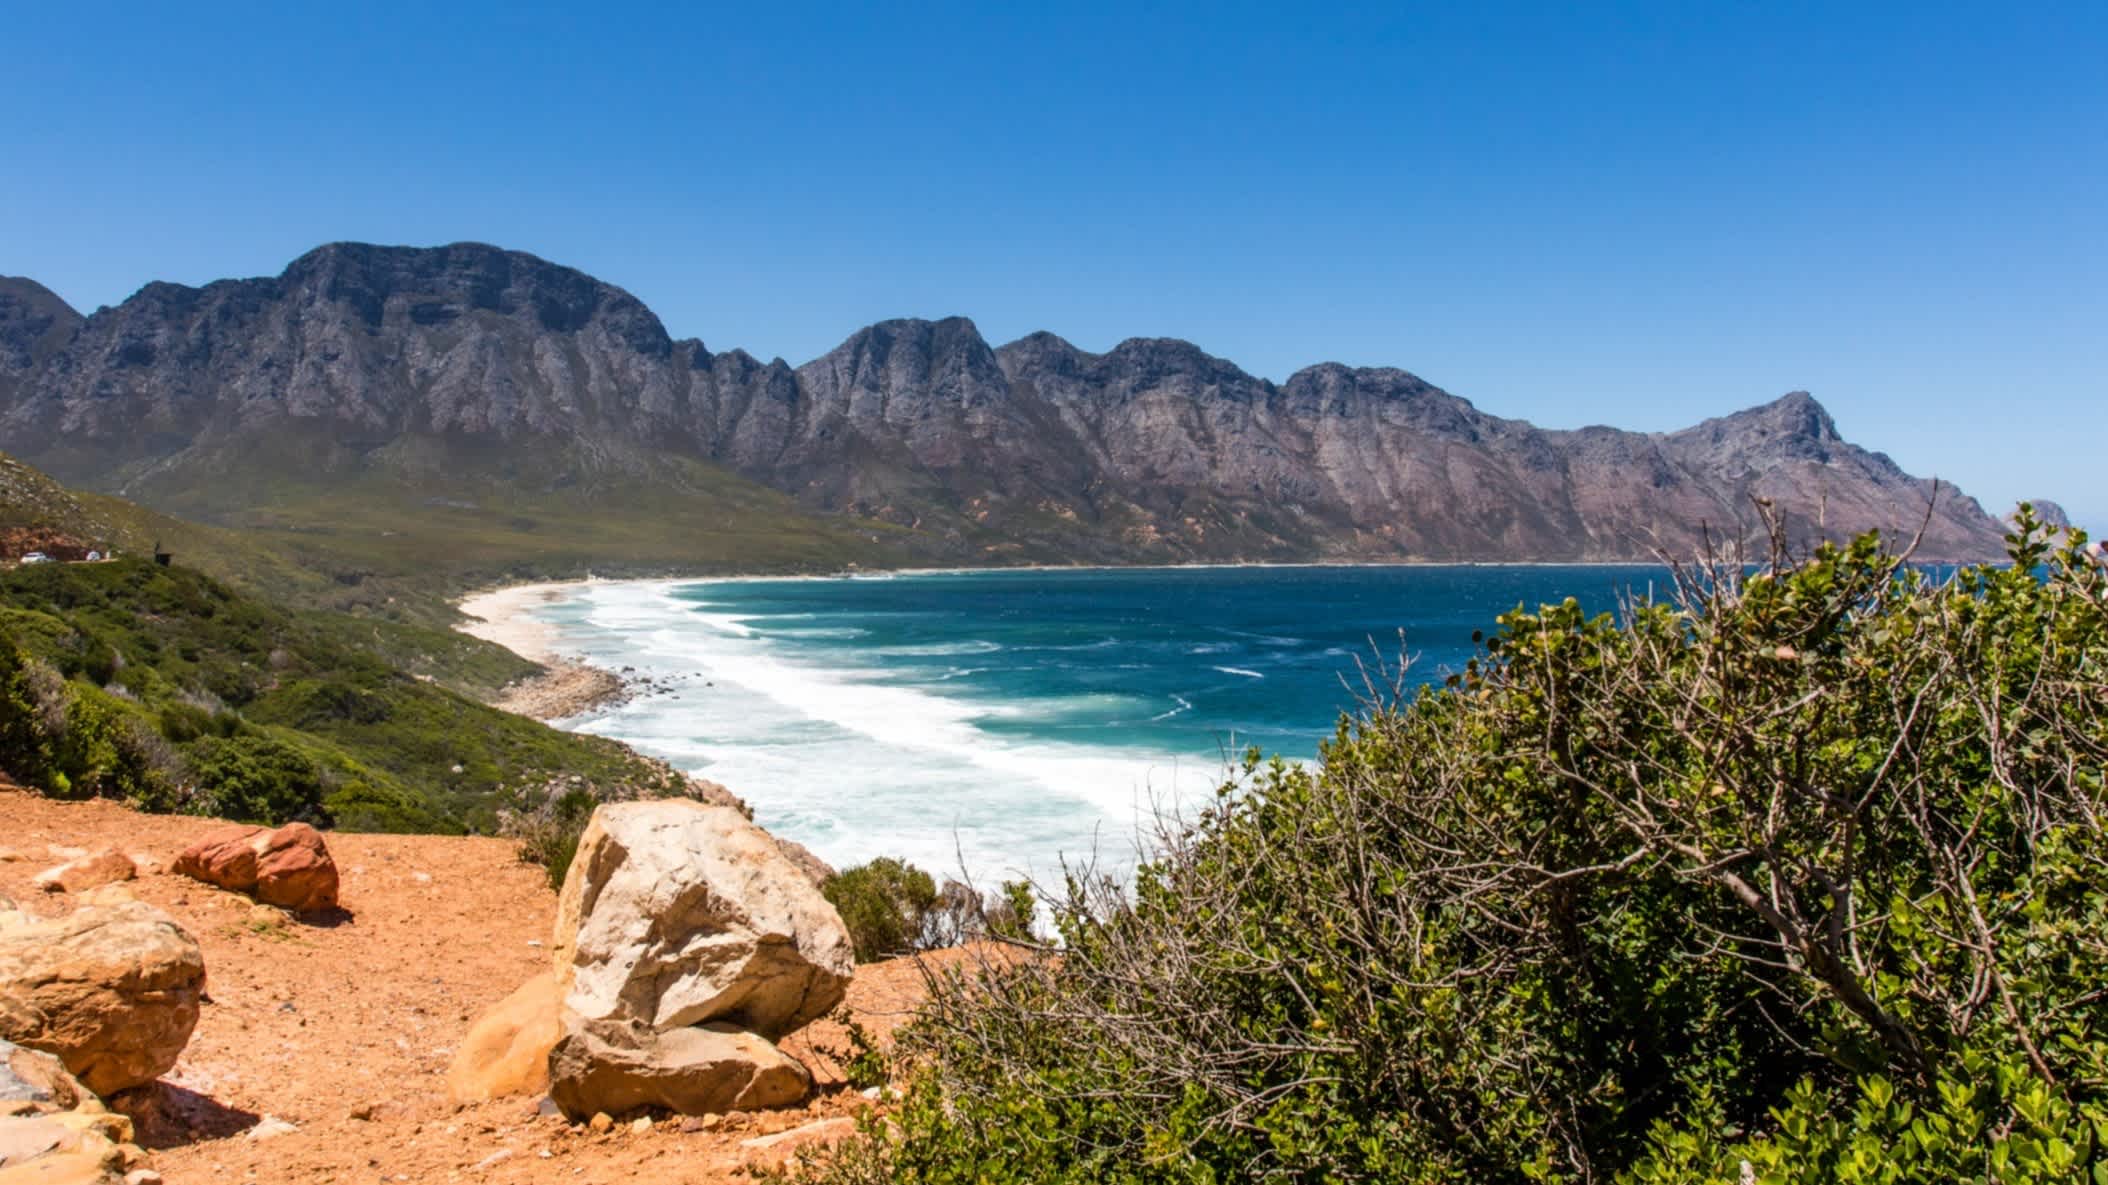 Meerblick auf die Gordons Bay im Westkap Südafrika b ei sonnigem Wetter und mit Büschen im Vordergrund. 